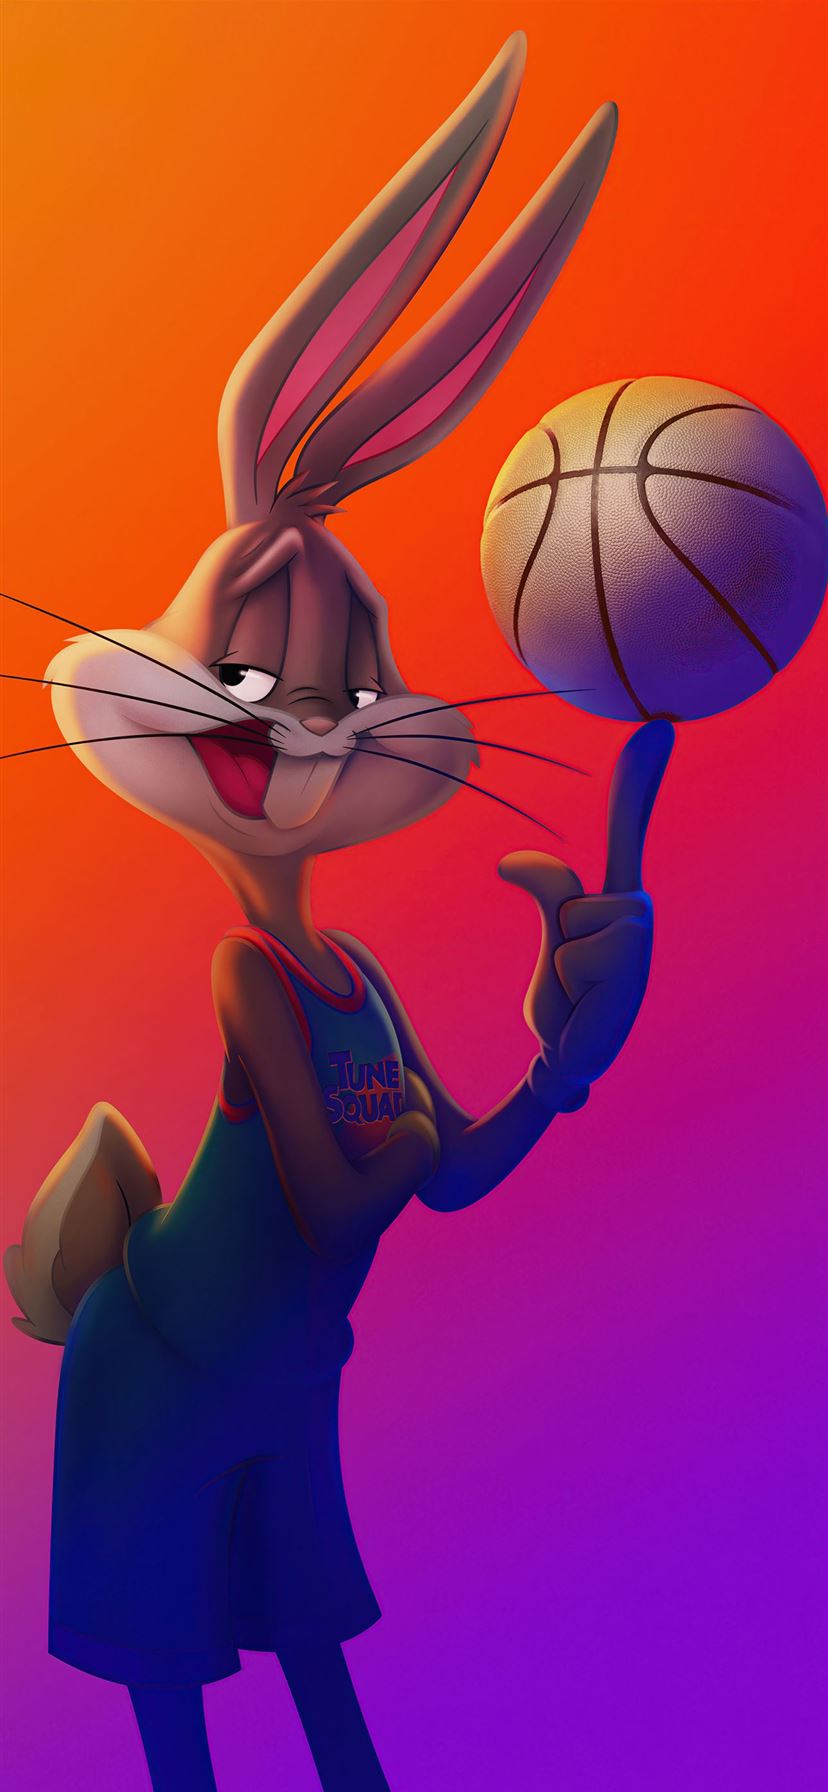 Bugs Bunny và Vũ trụ Jam sẽ mang đến cho bạn cảm giác vui nhộn và hài hước như chính những bộ phim hoạt hình mà bạn từng xem. Hãy khám phá những hình nền rực rỡ và hài hước của Bugs Bunny và Vũ trụ Jam và làm cho màn hình điện thoại của bạn trở nên thật vui nhộn và đáng yêu.